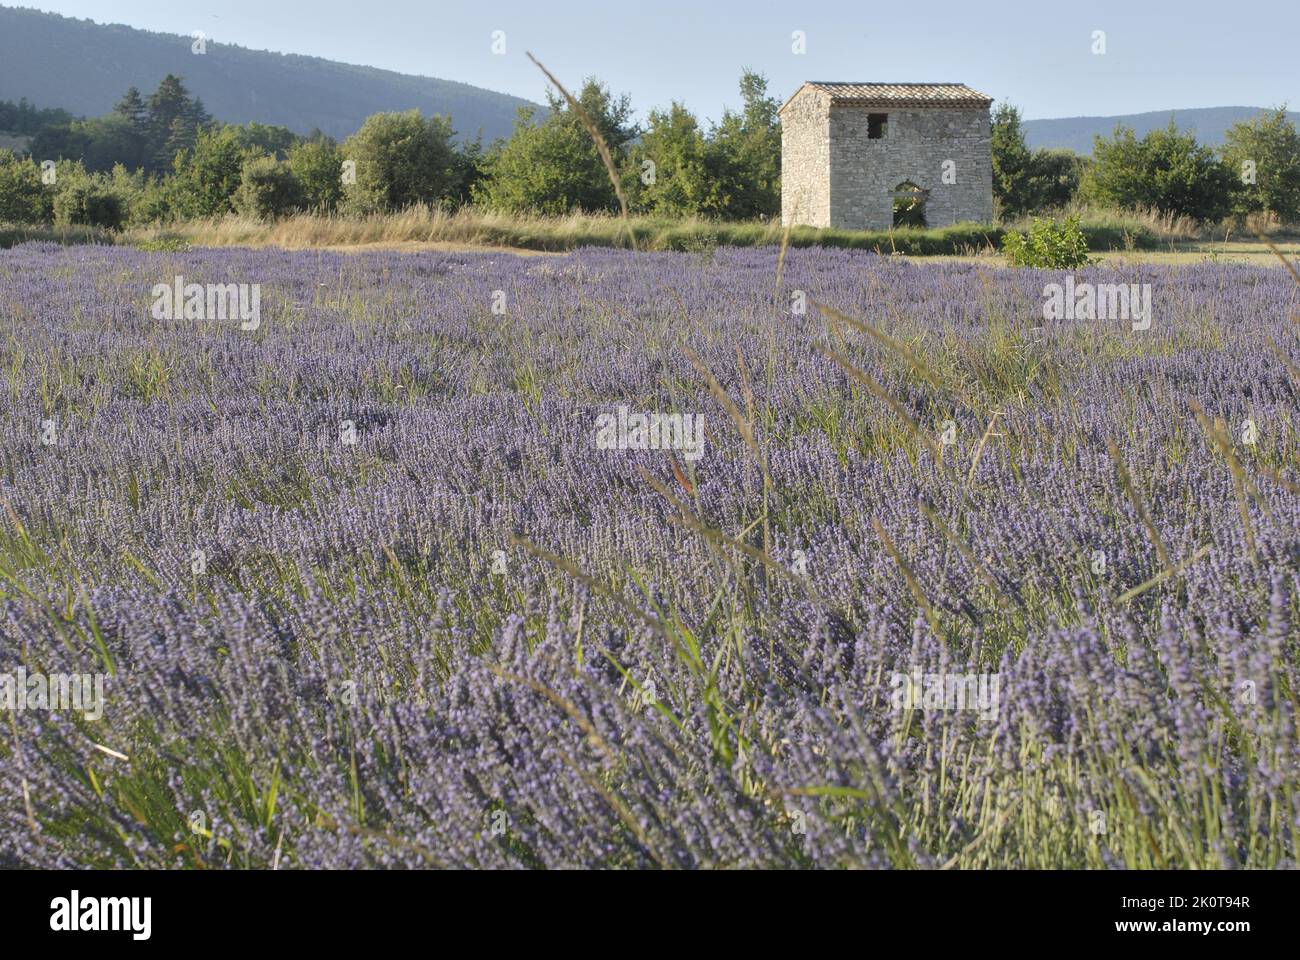 Lavendel (Lavandula sp) in der Nähe eines Blumenfeldes, das geerntet werden soll - Sault Area - Provence - Vaucluse - Frankreich Stockfoto